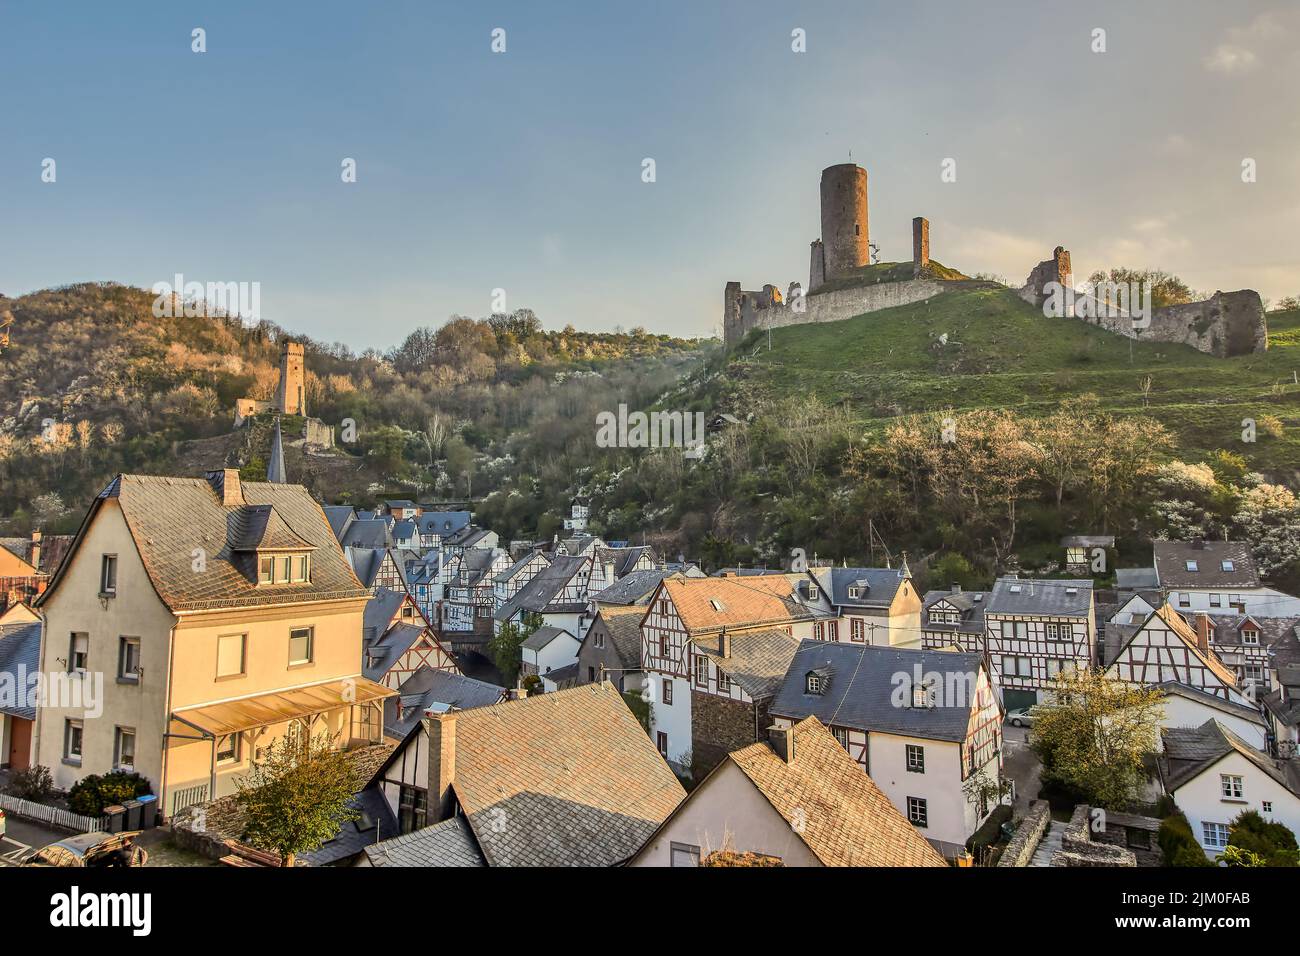 Die Schlösser Lowenburg und Philippsburg auf dem Hügel in einer kleinen Stadt namens Monreal in der Eifel, Deutschland Stockfoto